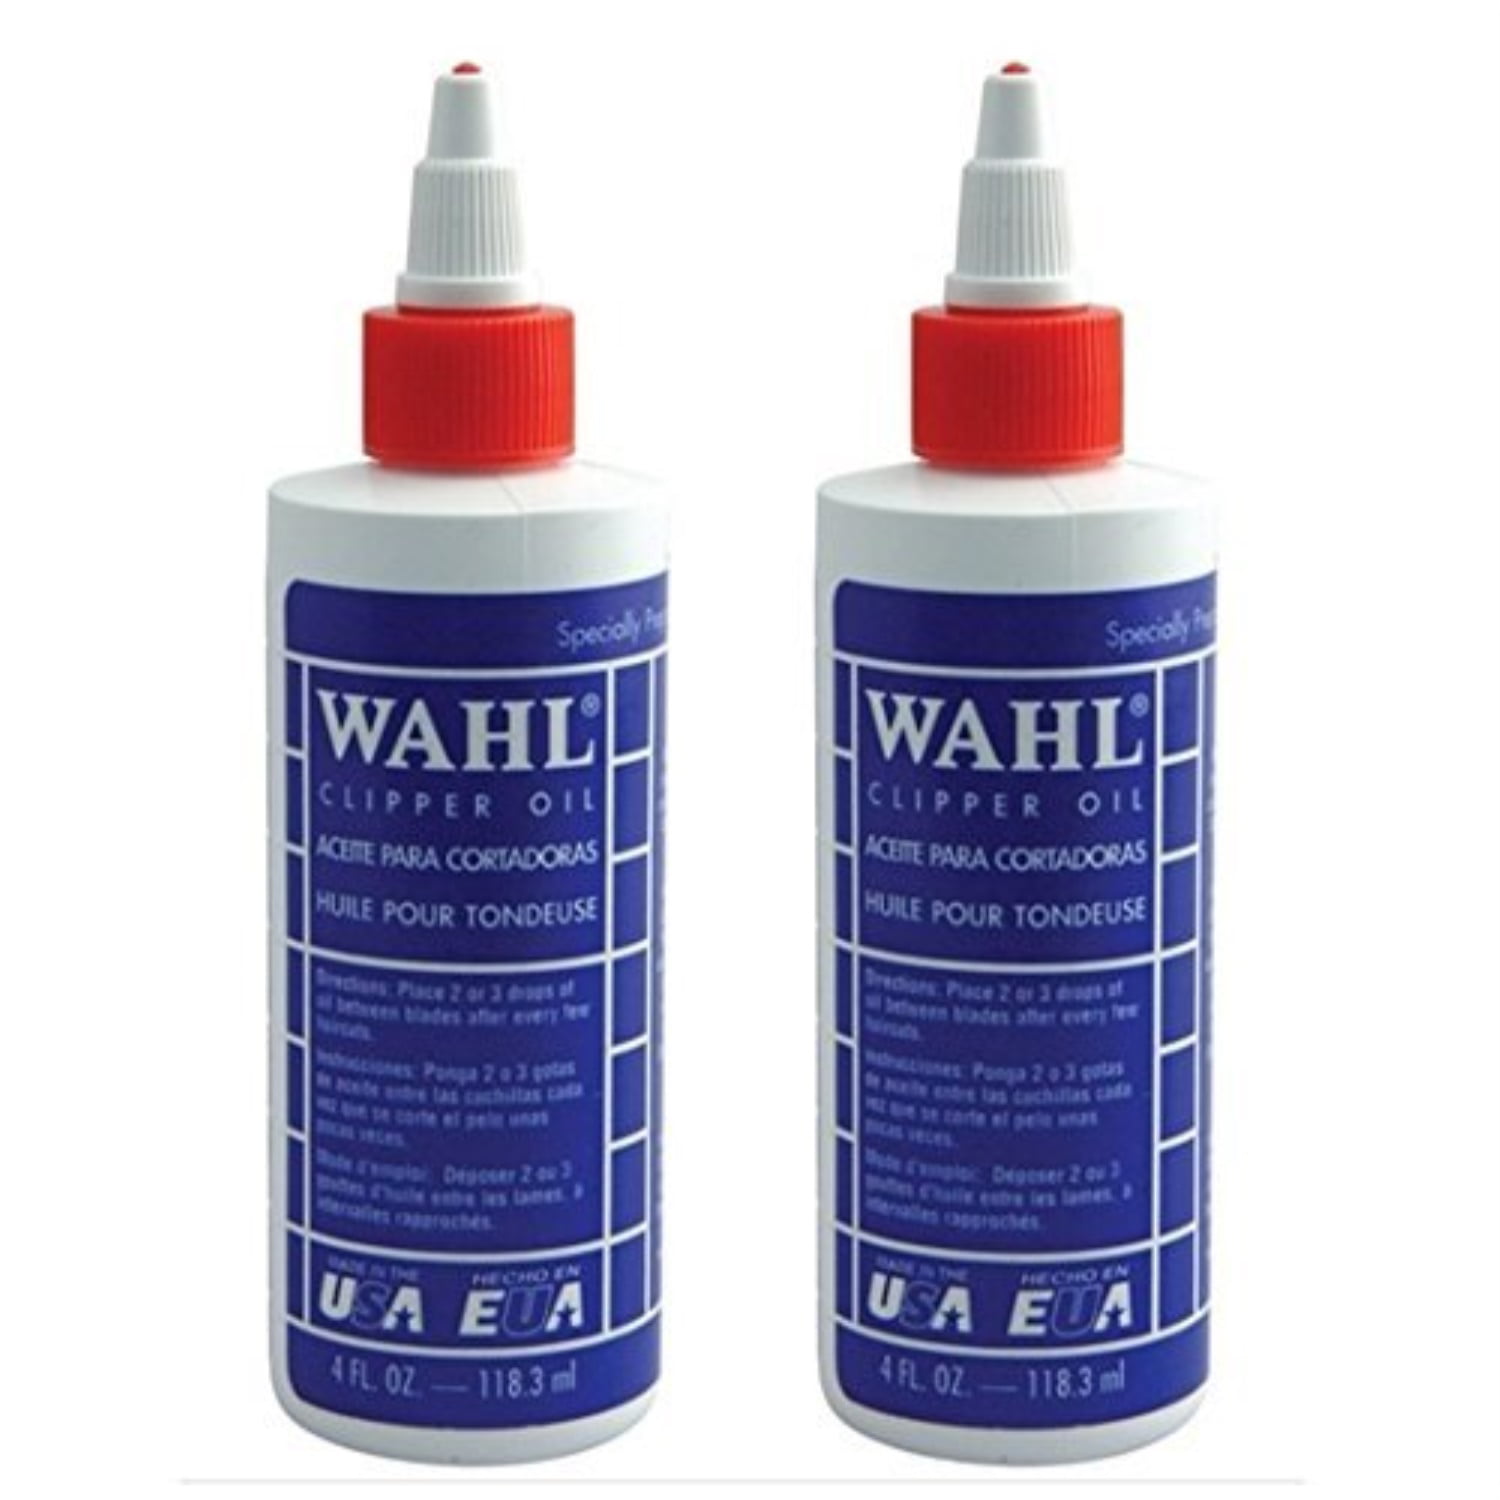 wahl oil walmart